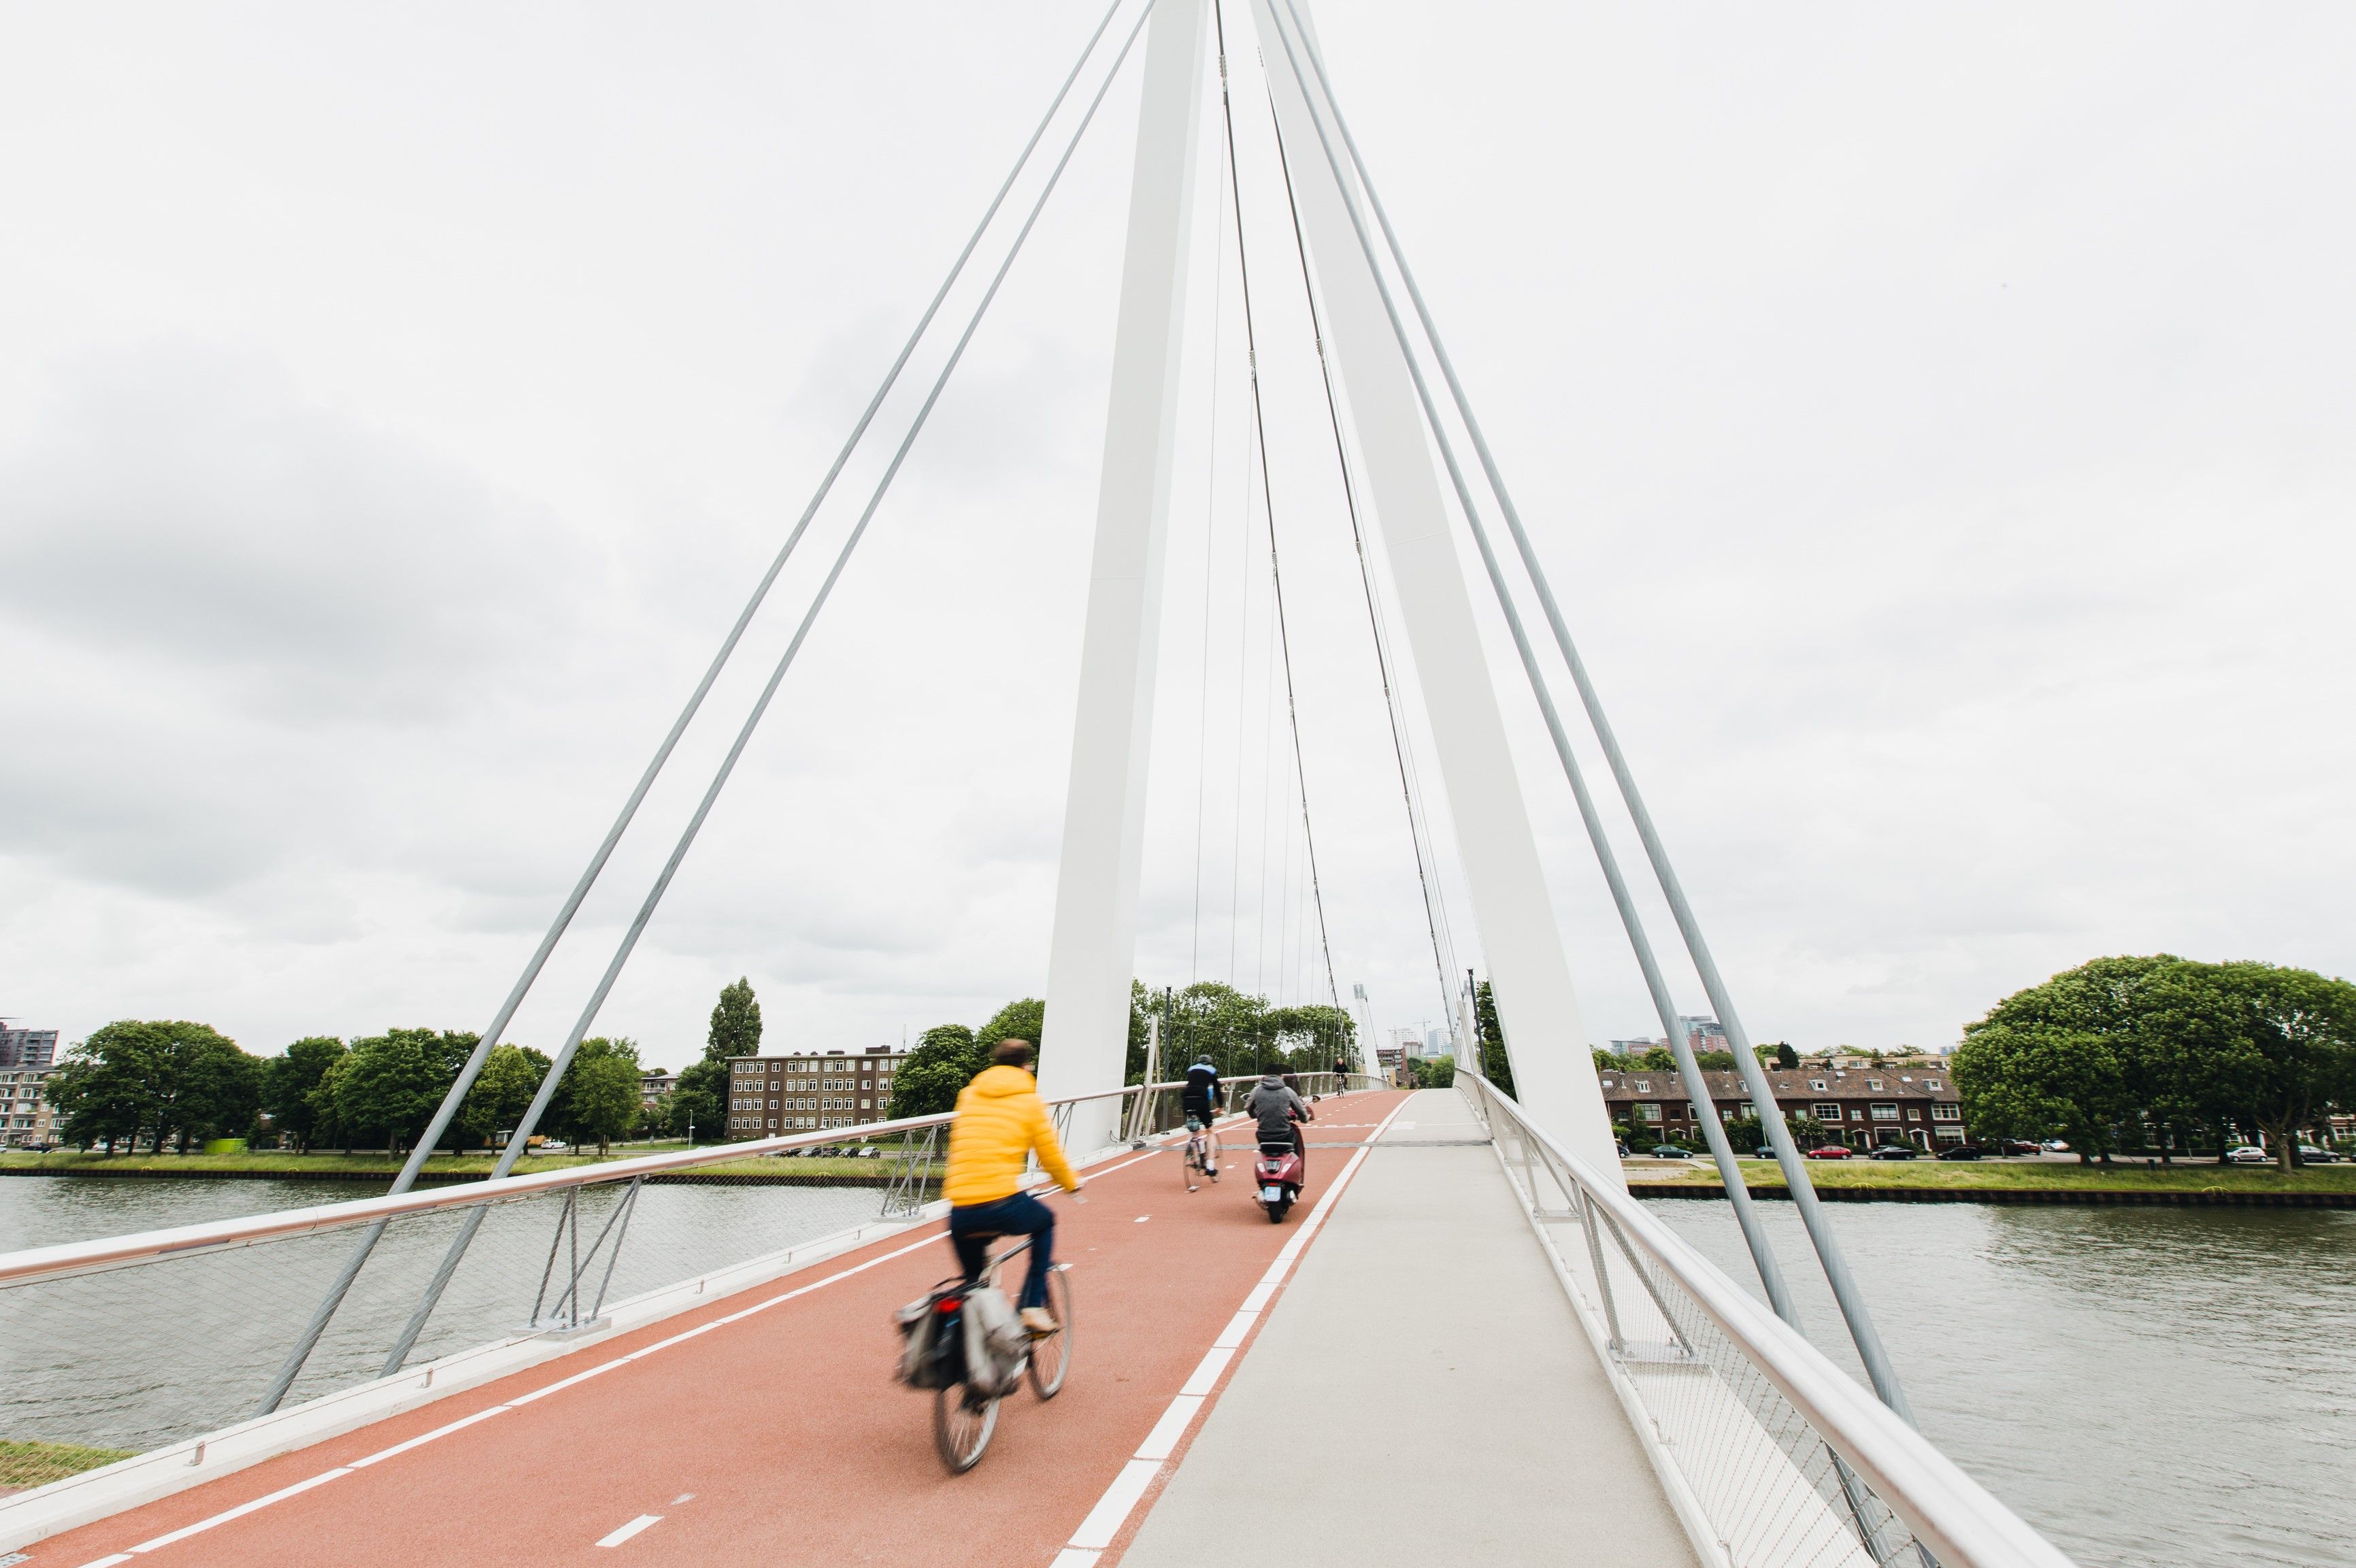 Dafne Schippers Brücke in Utrecht, © Philipp Böhme Creative Commons CC0